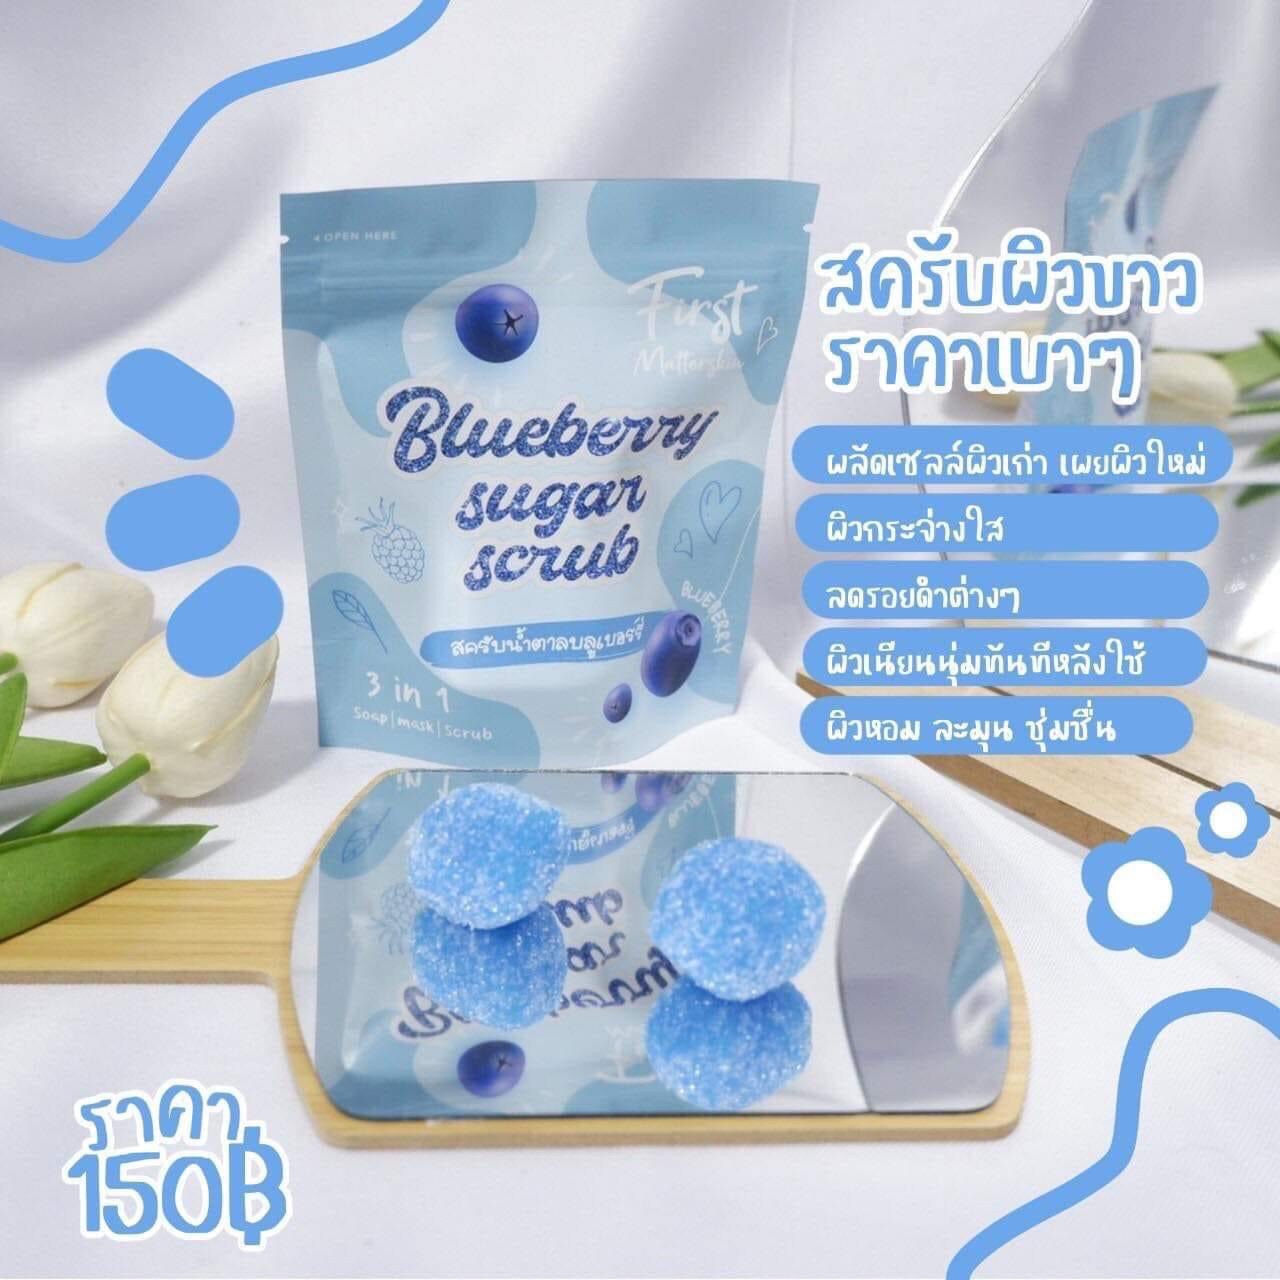 สครับน้ำตาลบลูเบอร์รี่  Blueberry sugar scrub ขัดผิวvาว สครับตัวดังใน TikTok 1 ซอง 10 ก้อน ( 1ซอง)